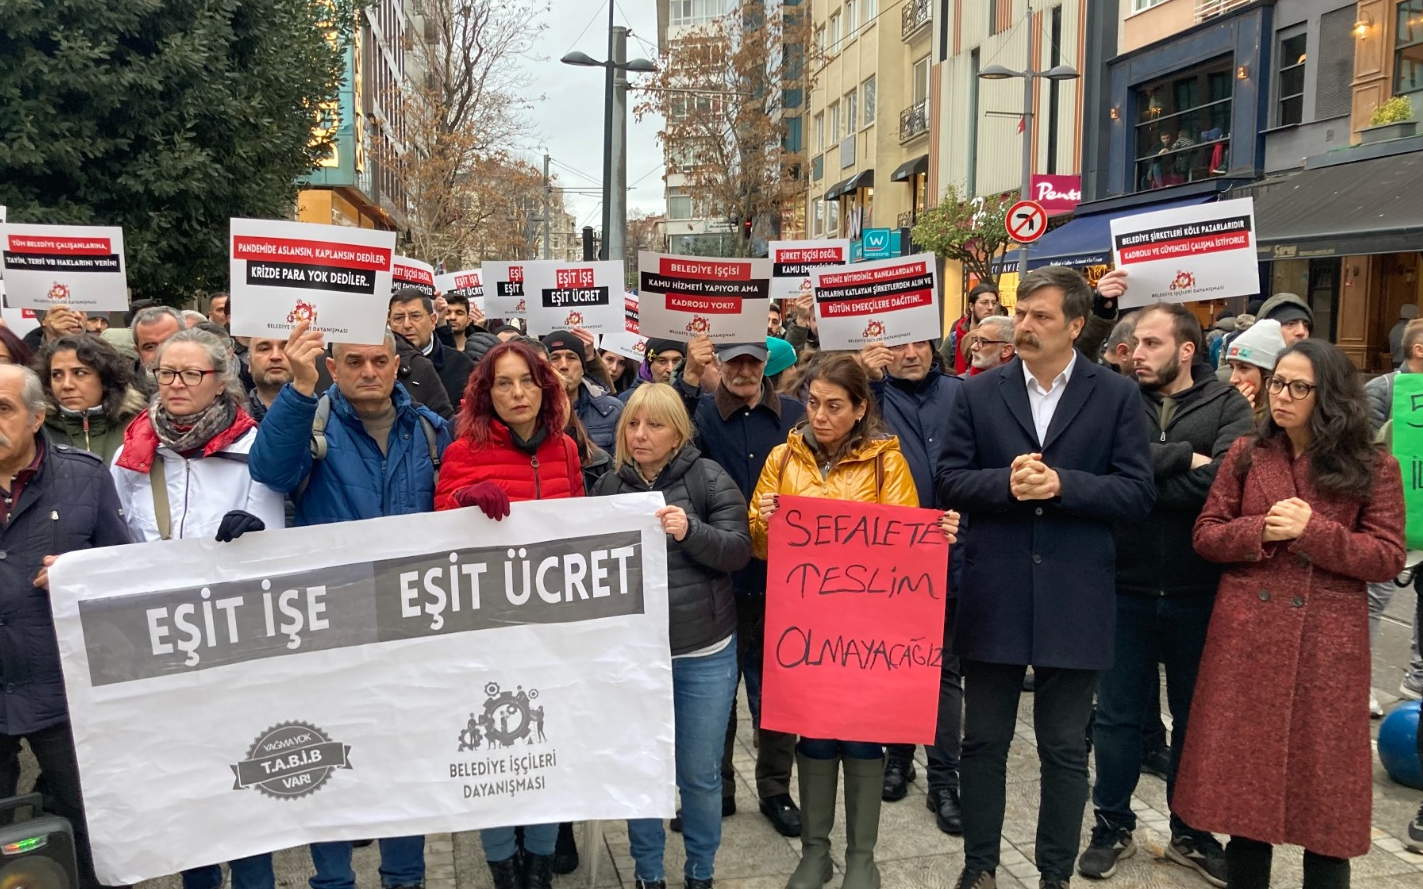 Belediye İşçileri Dayanışması’ndan Kadıköy’de eylem